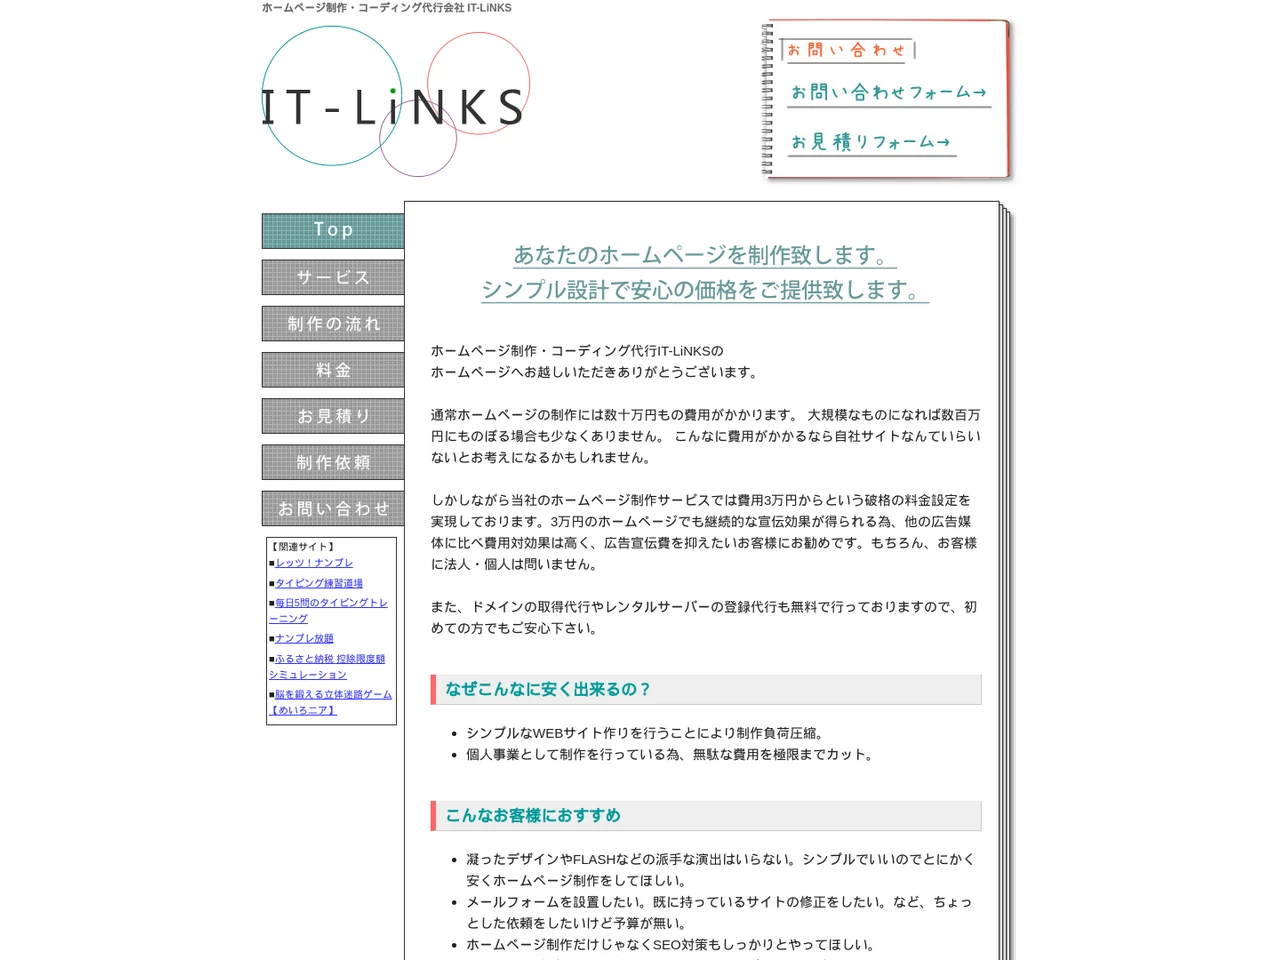 IT-LiNKS